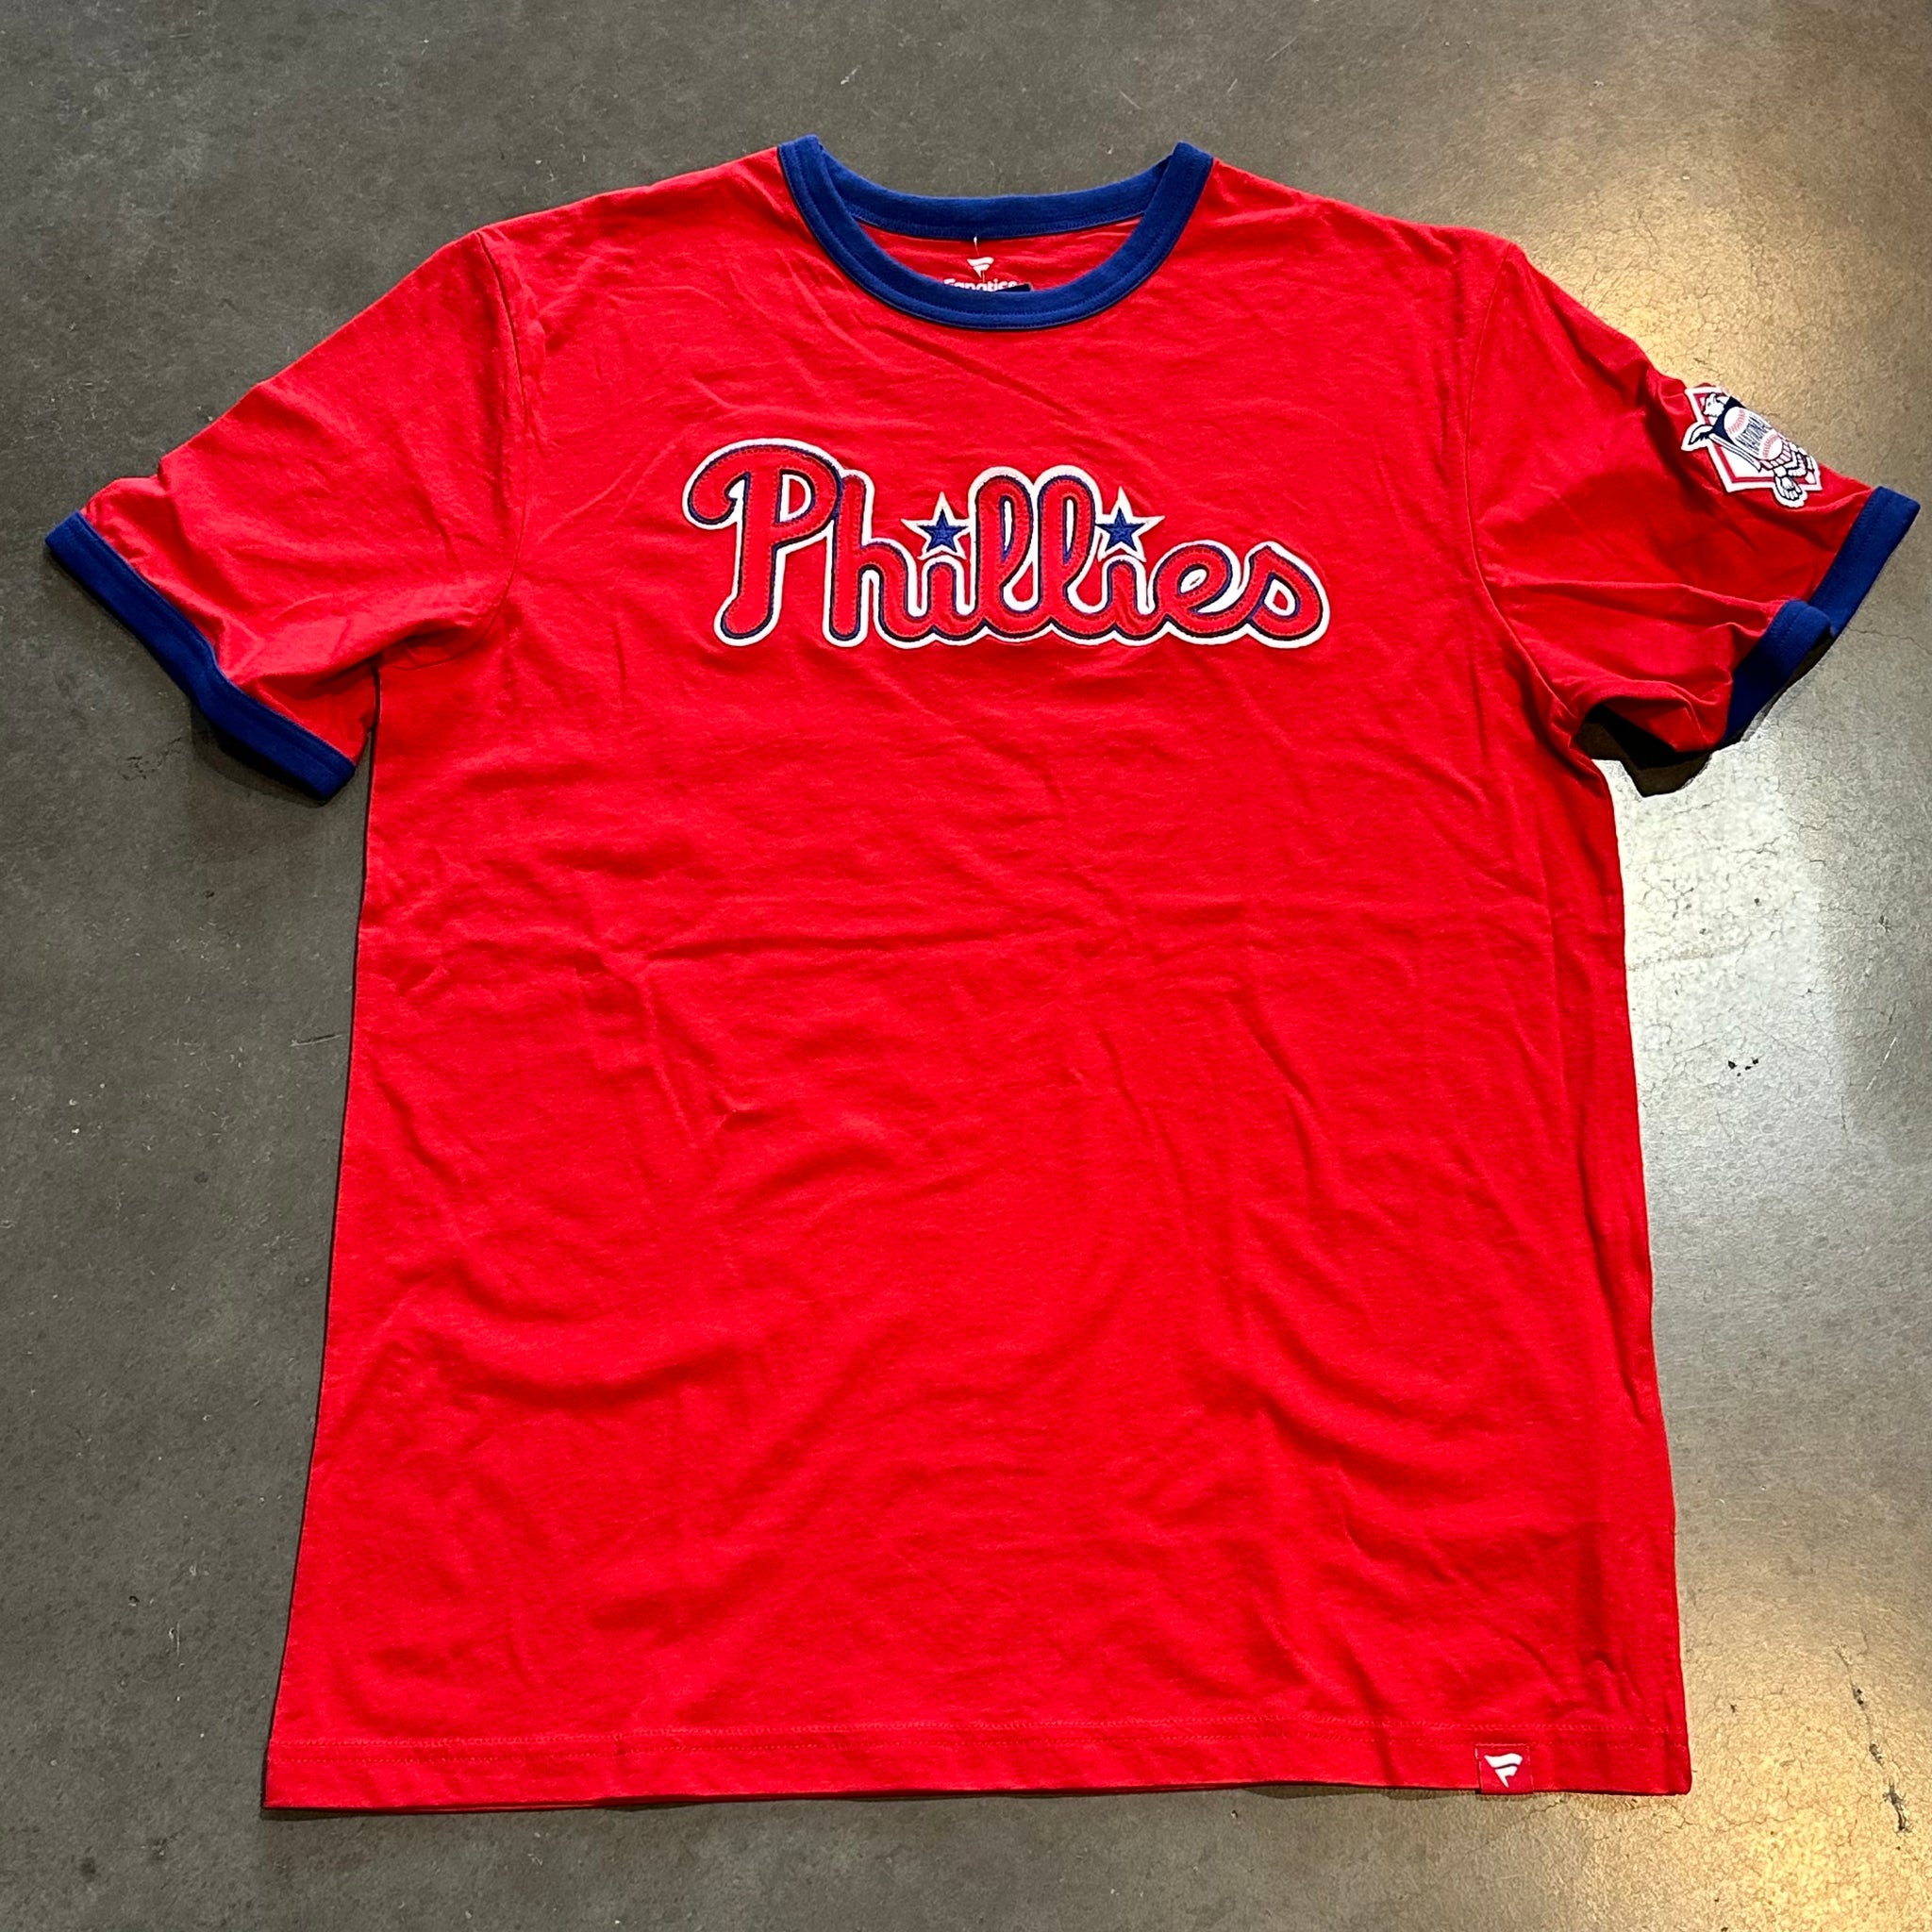 Philadelphia Phillies Fanatics Men's Forced Out T-Shirt